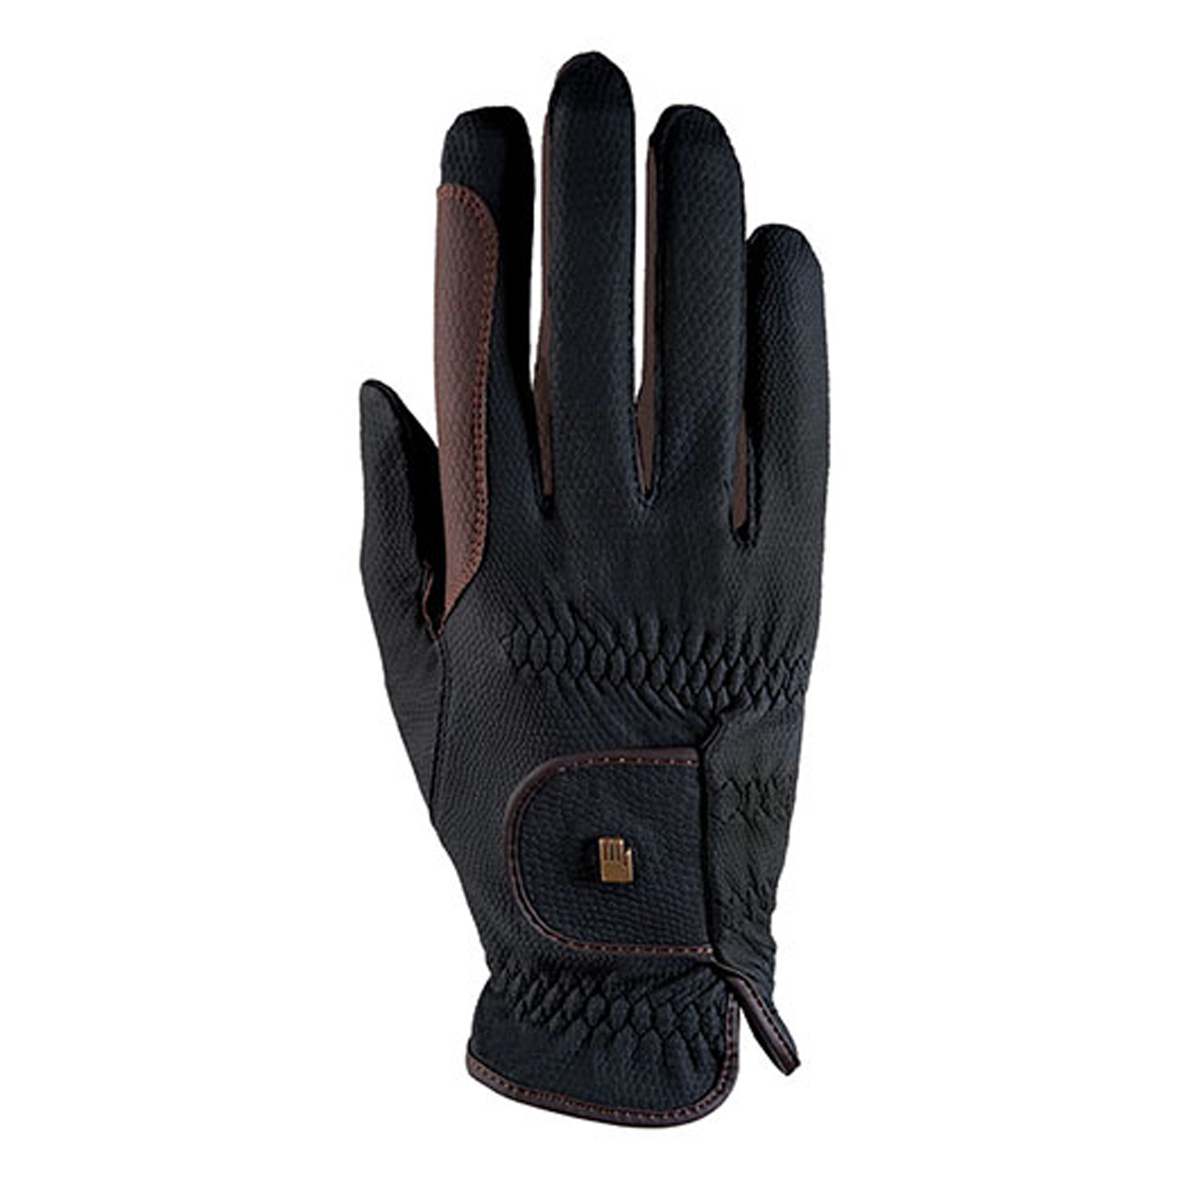 Handschoenen Roeckl Malta Bicolor Grip, 6,5 in black/brown